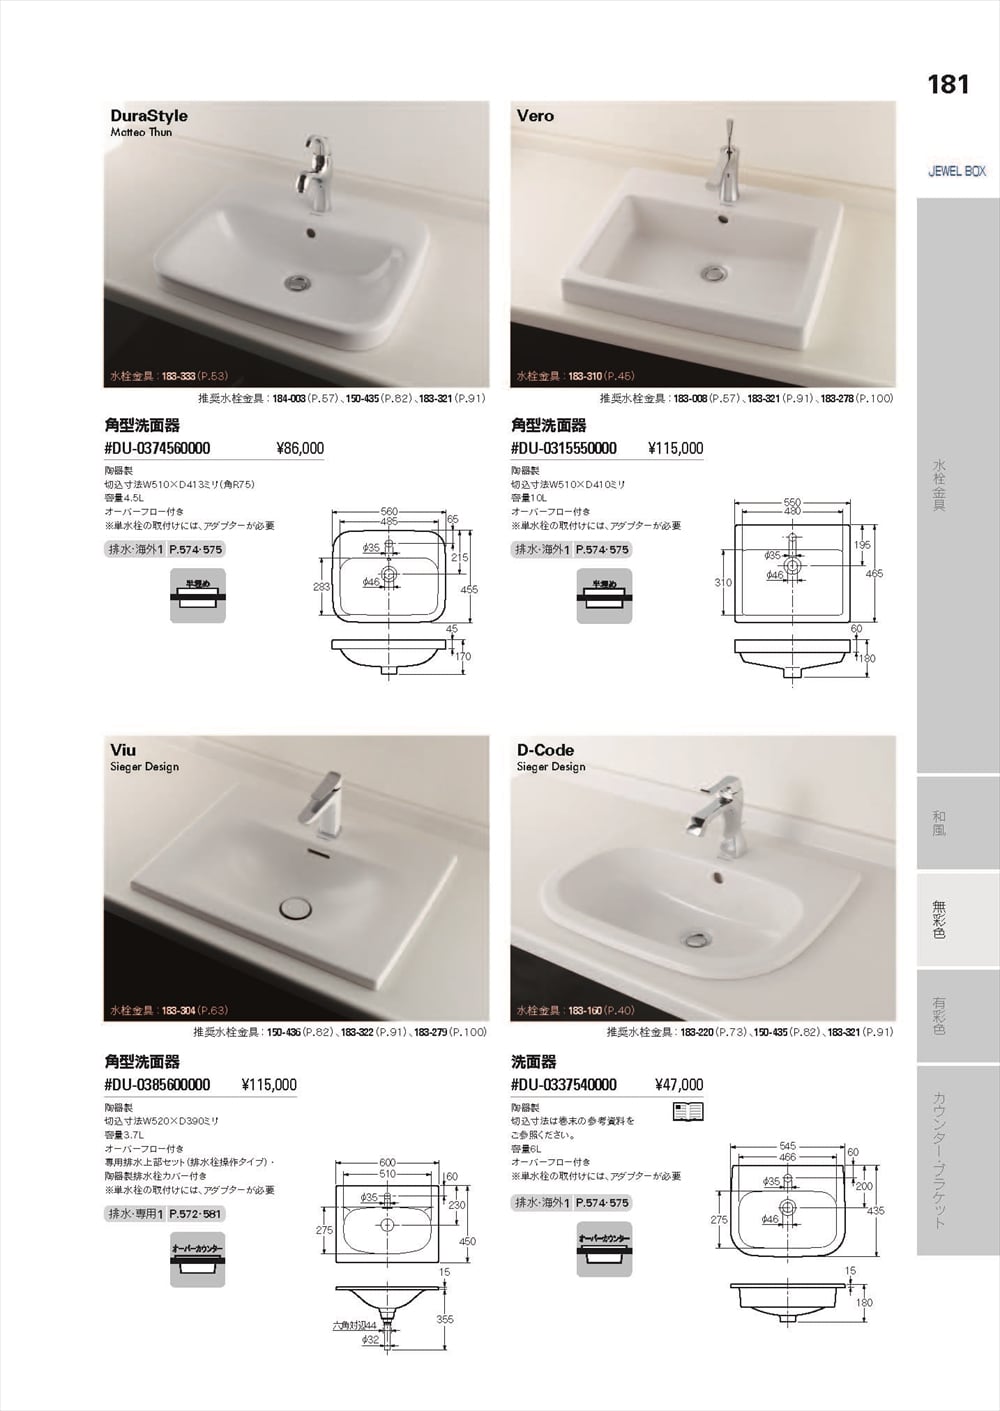 カクダイ 洗面器 #DU-0337540000 - 2